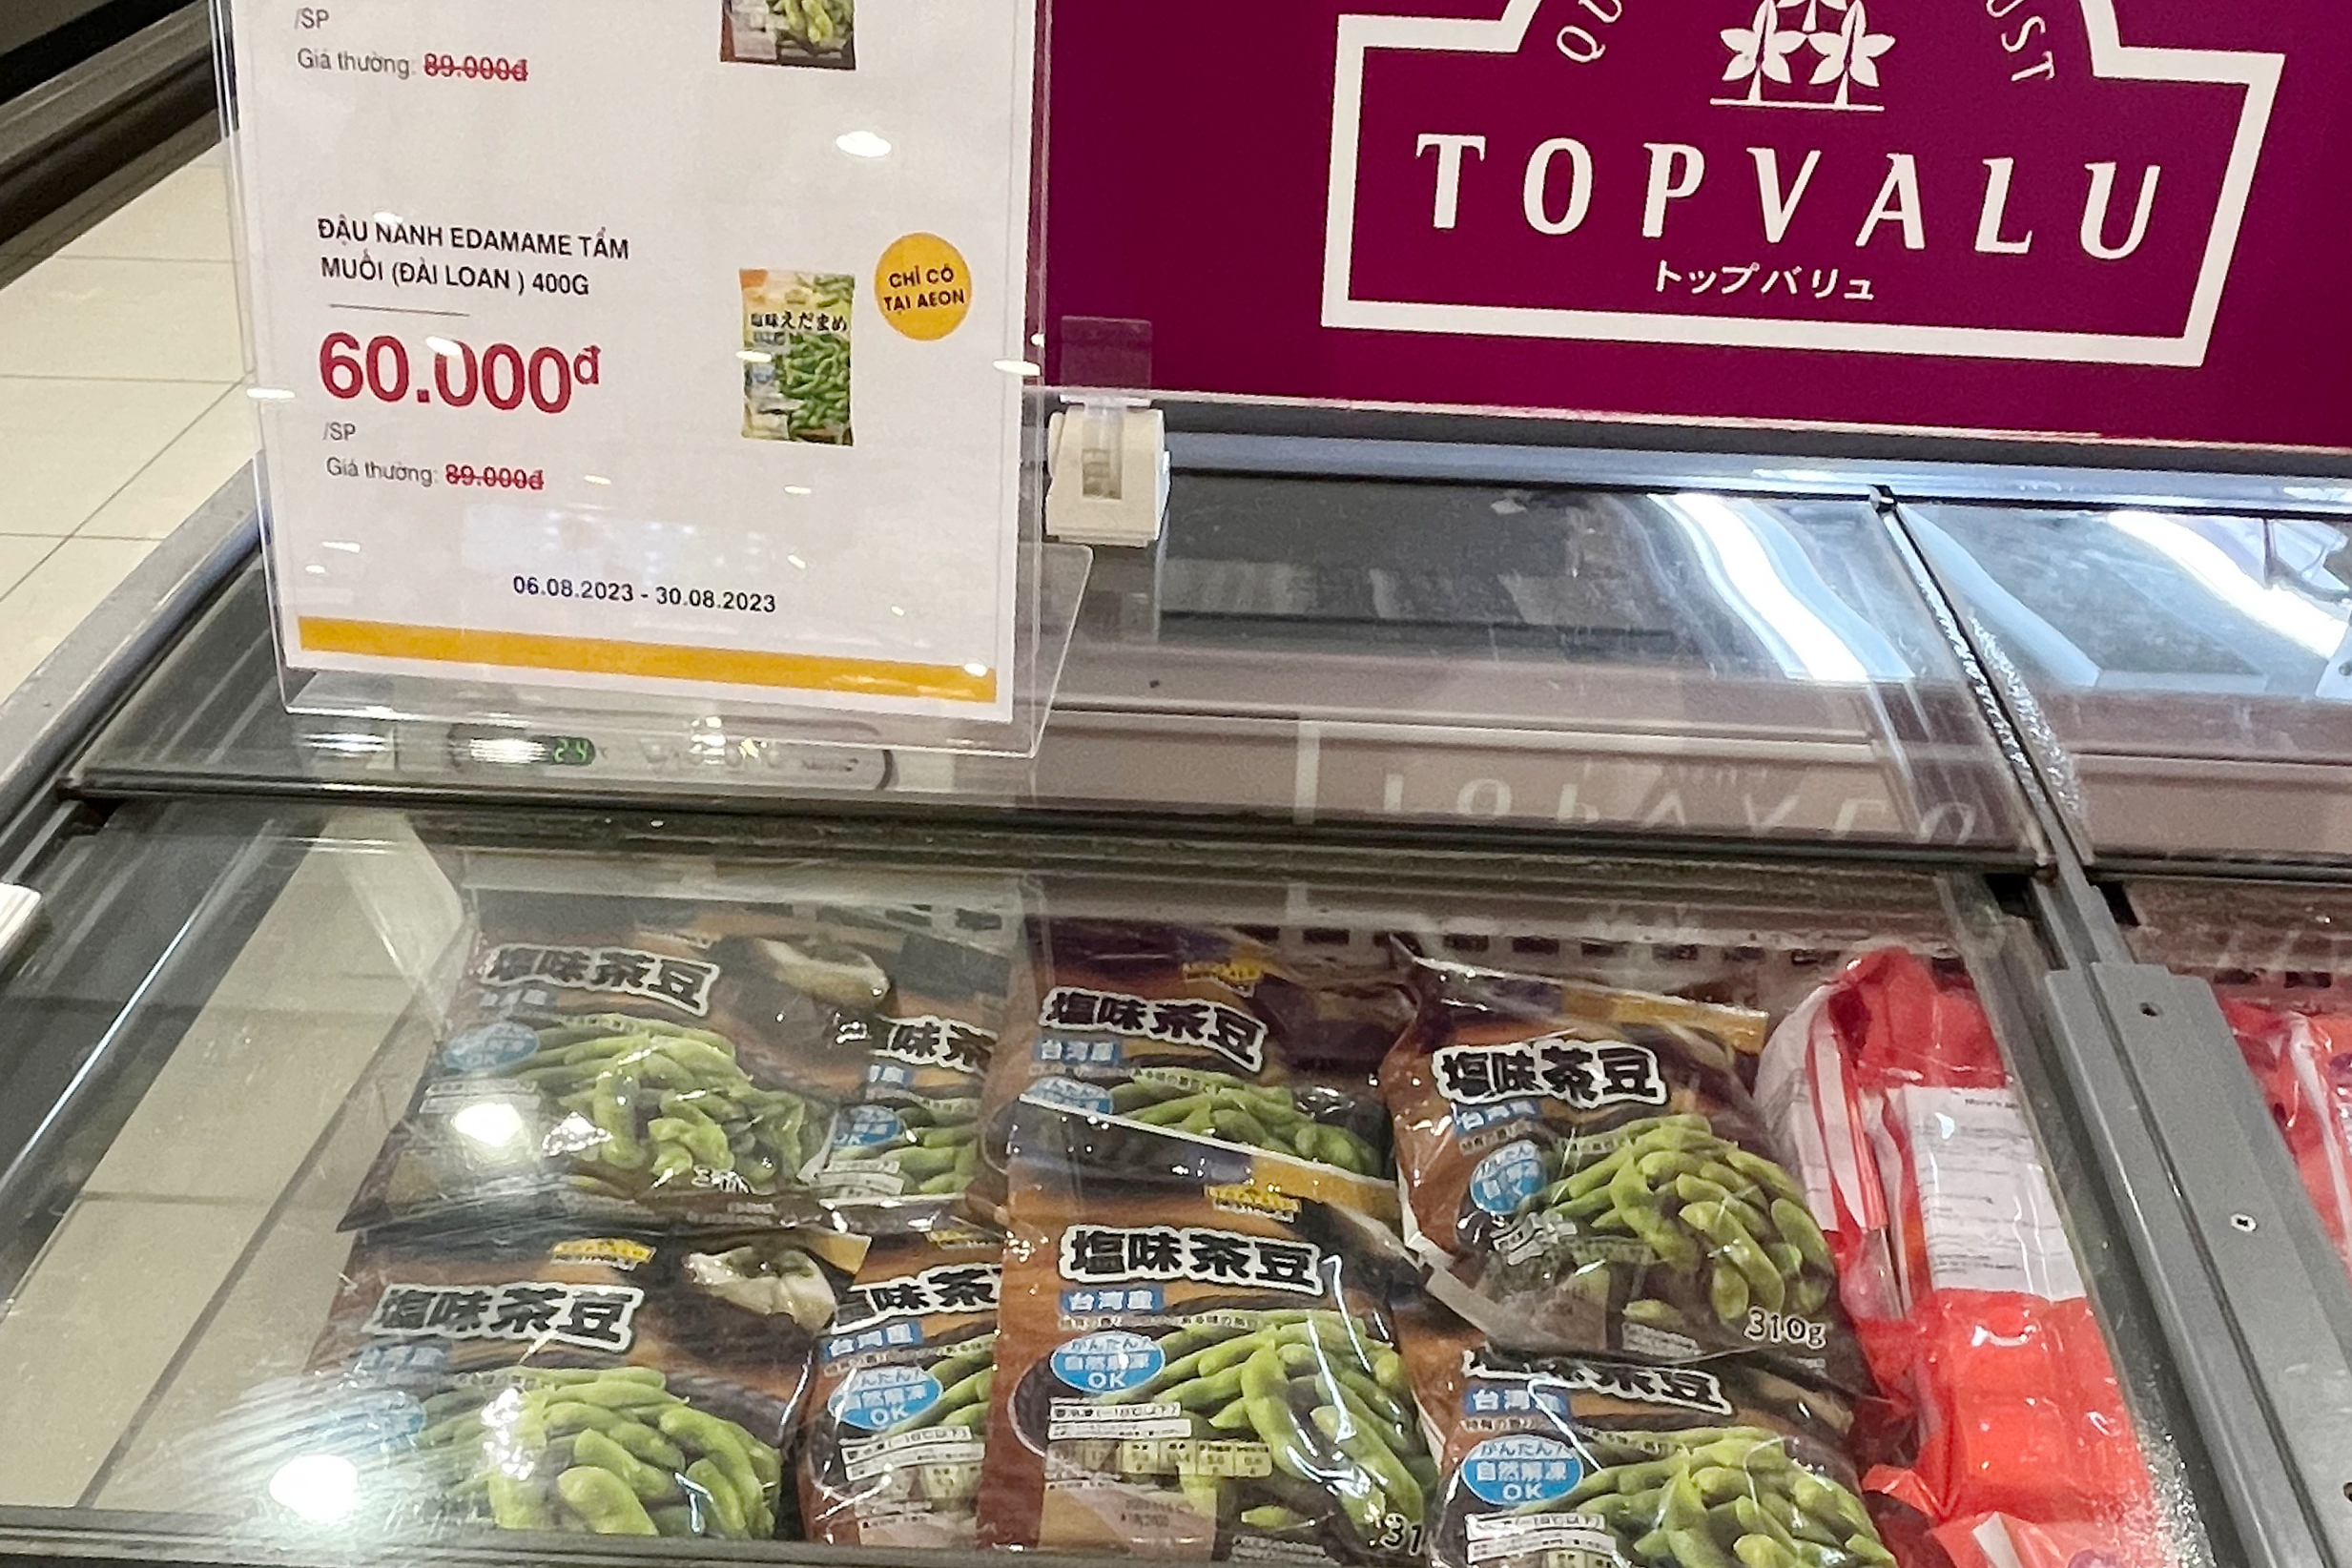 イオンでは日本の茶豆がそのまま売られていました